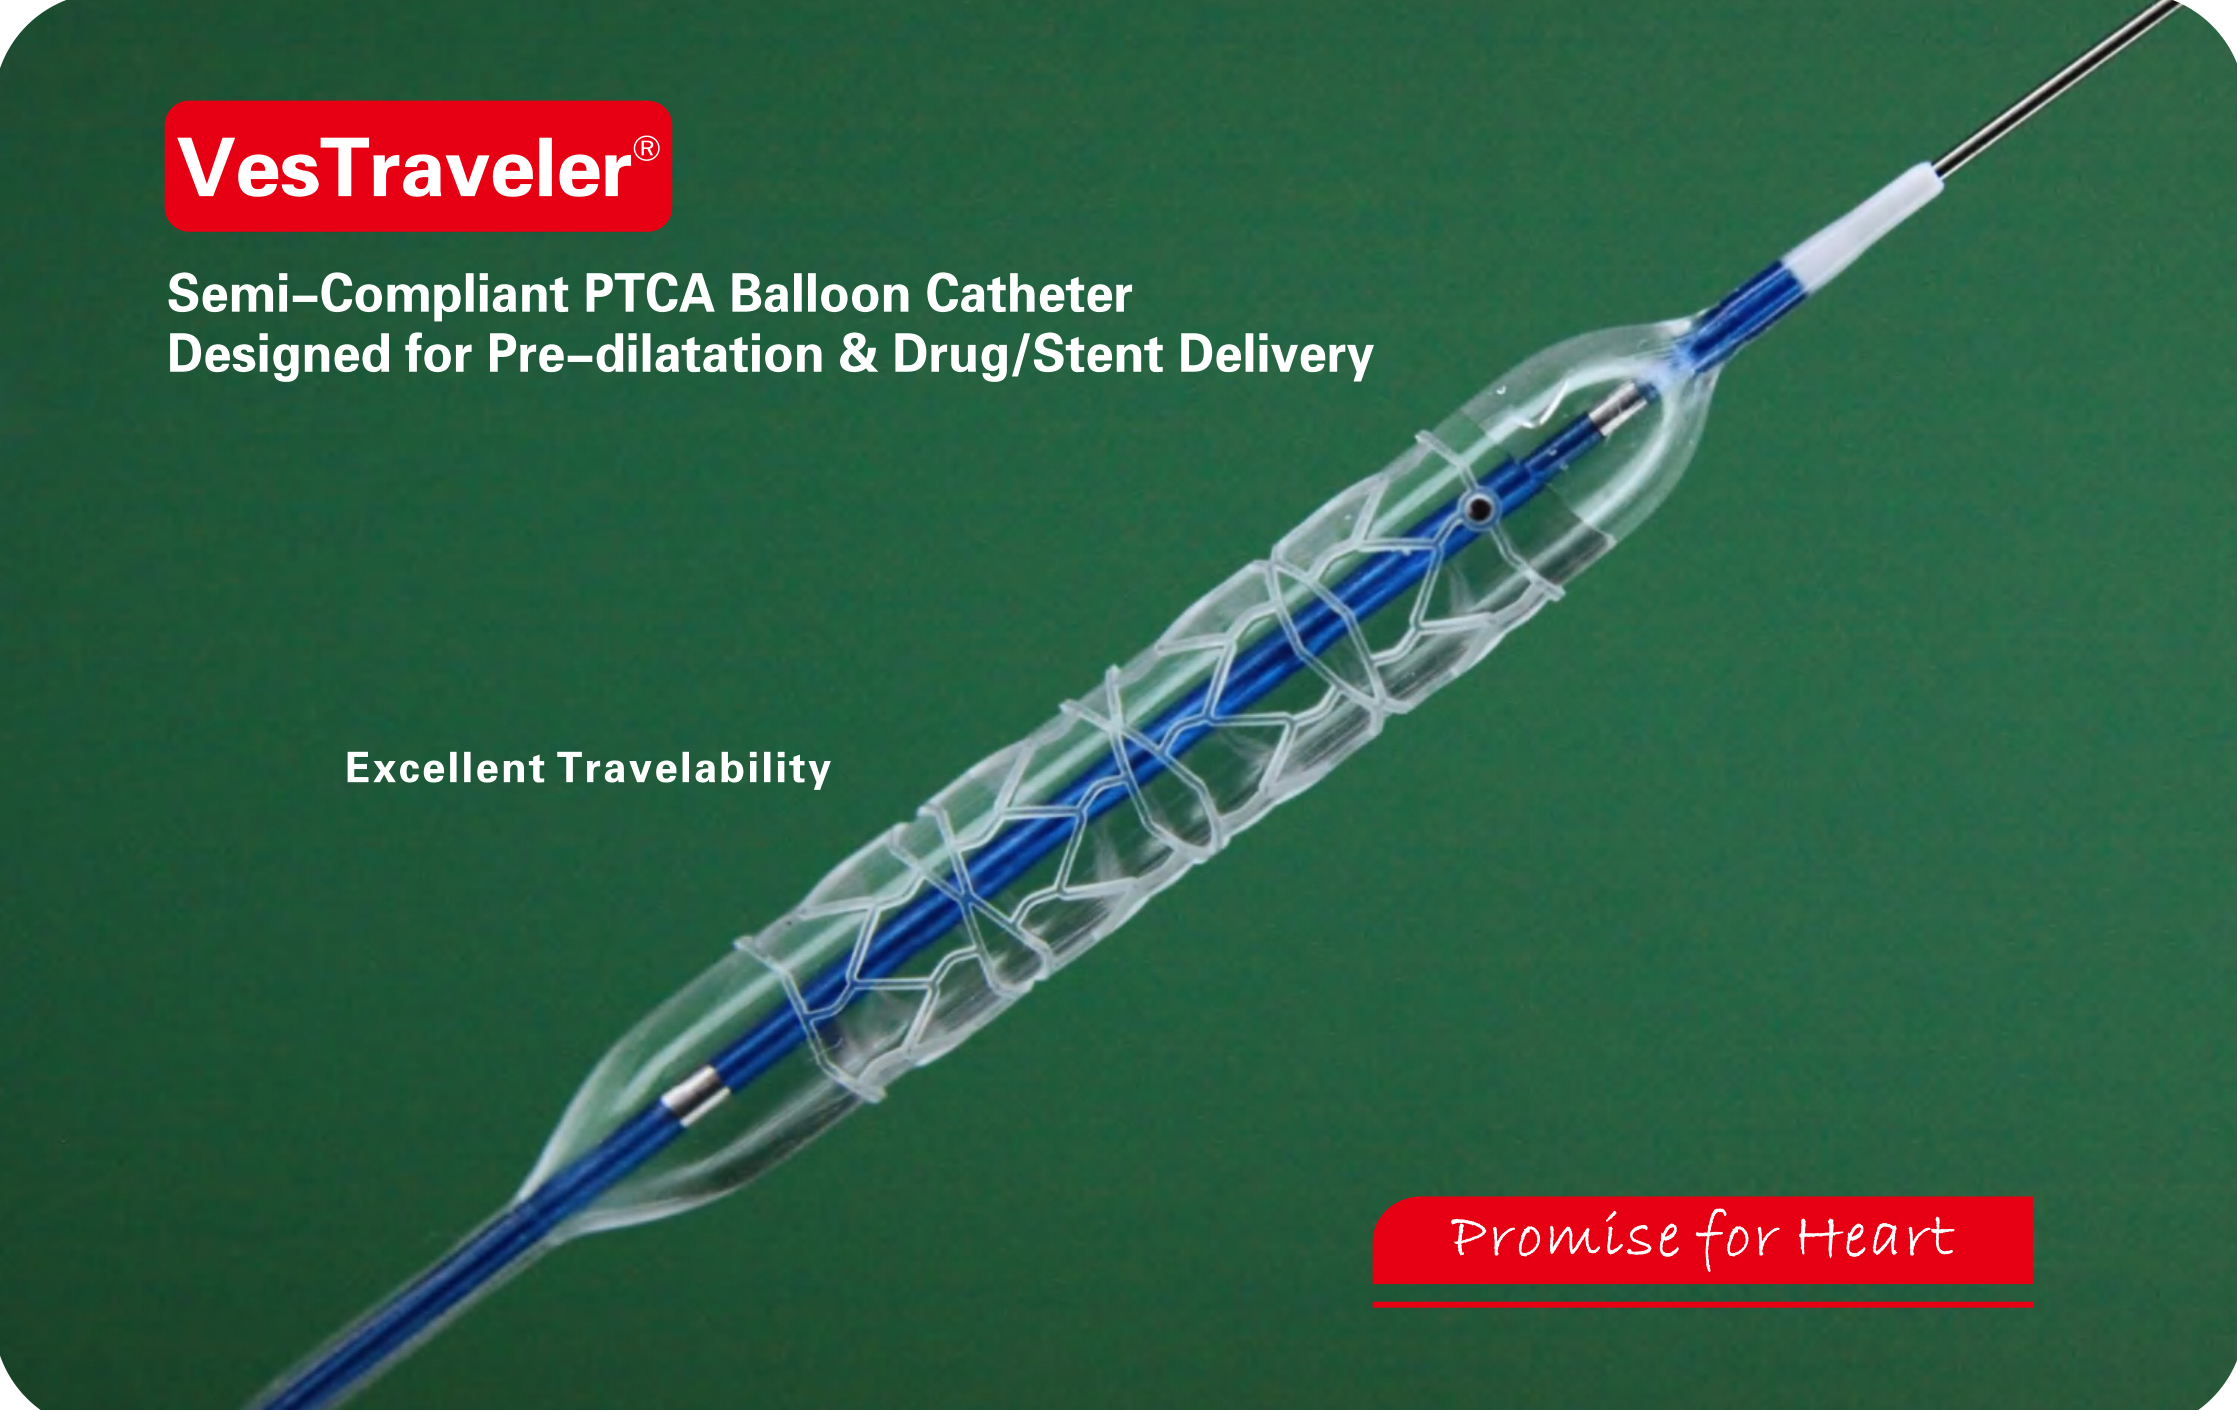 Semi-compliant Balloon Catheter